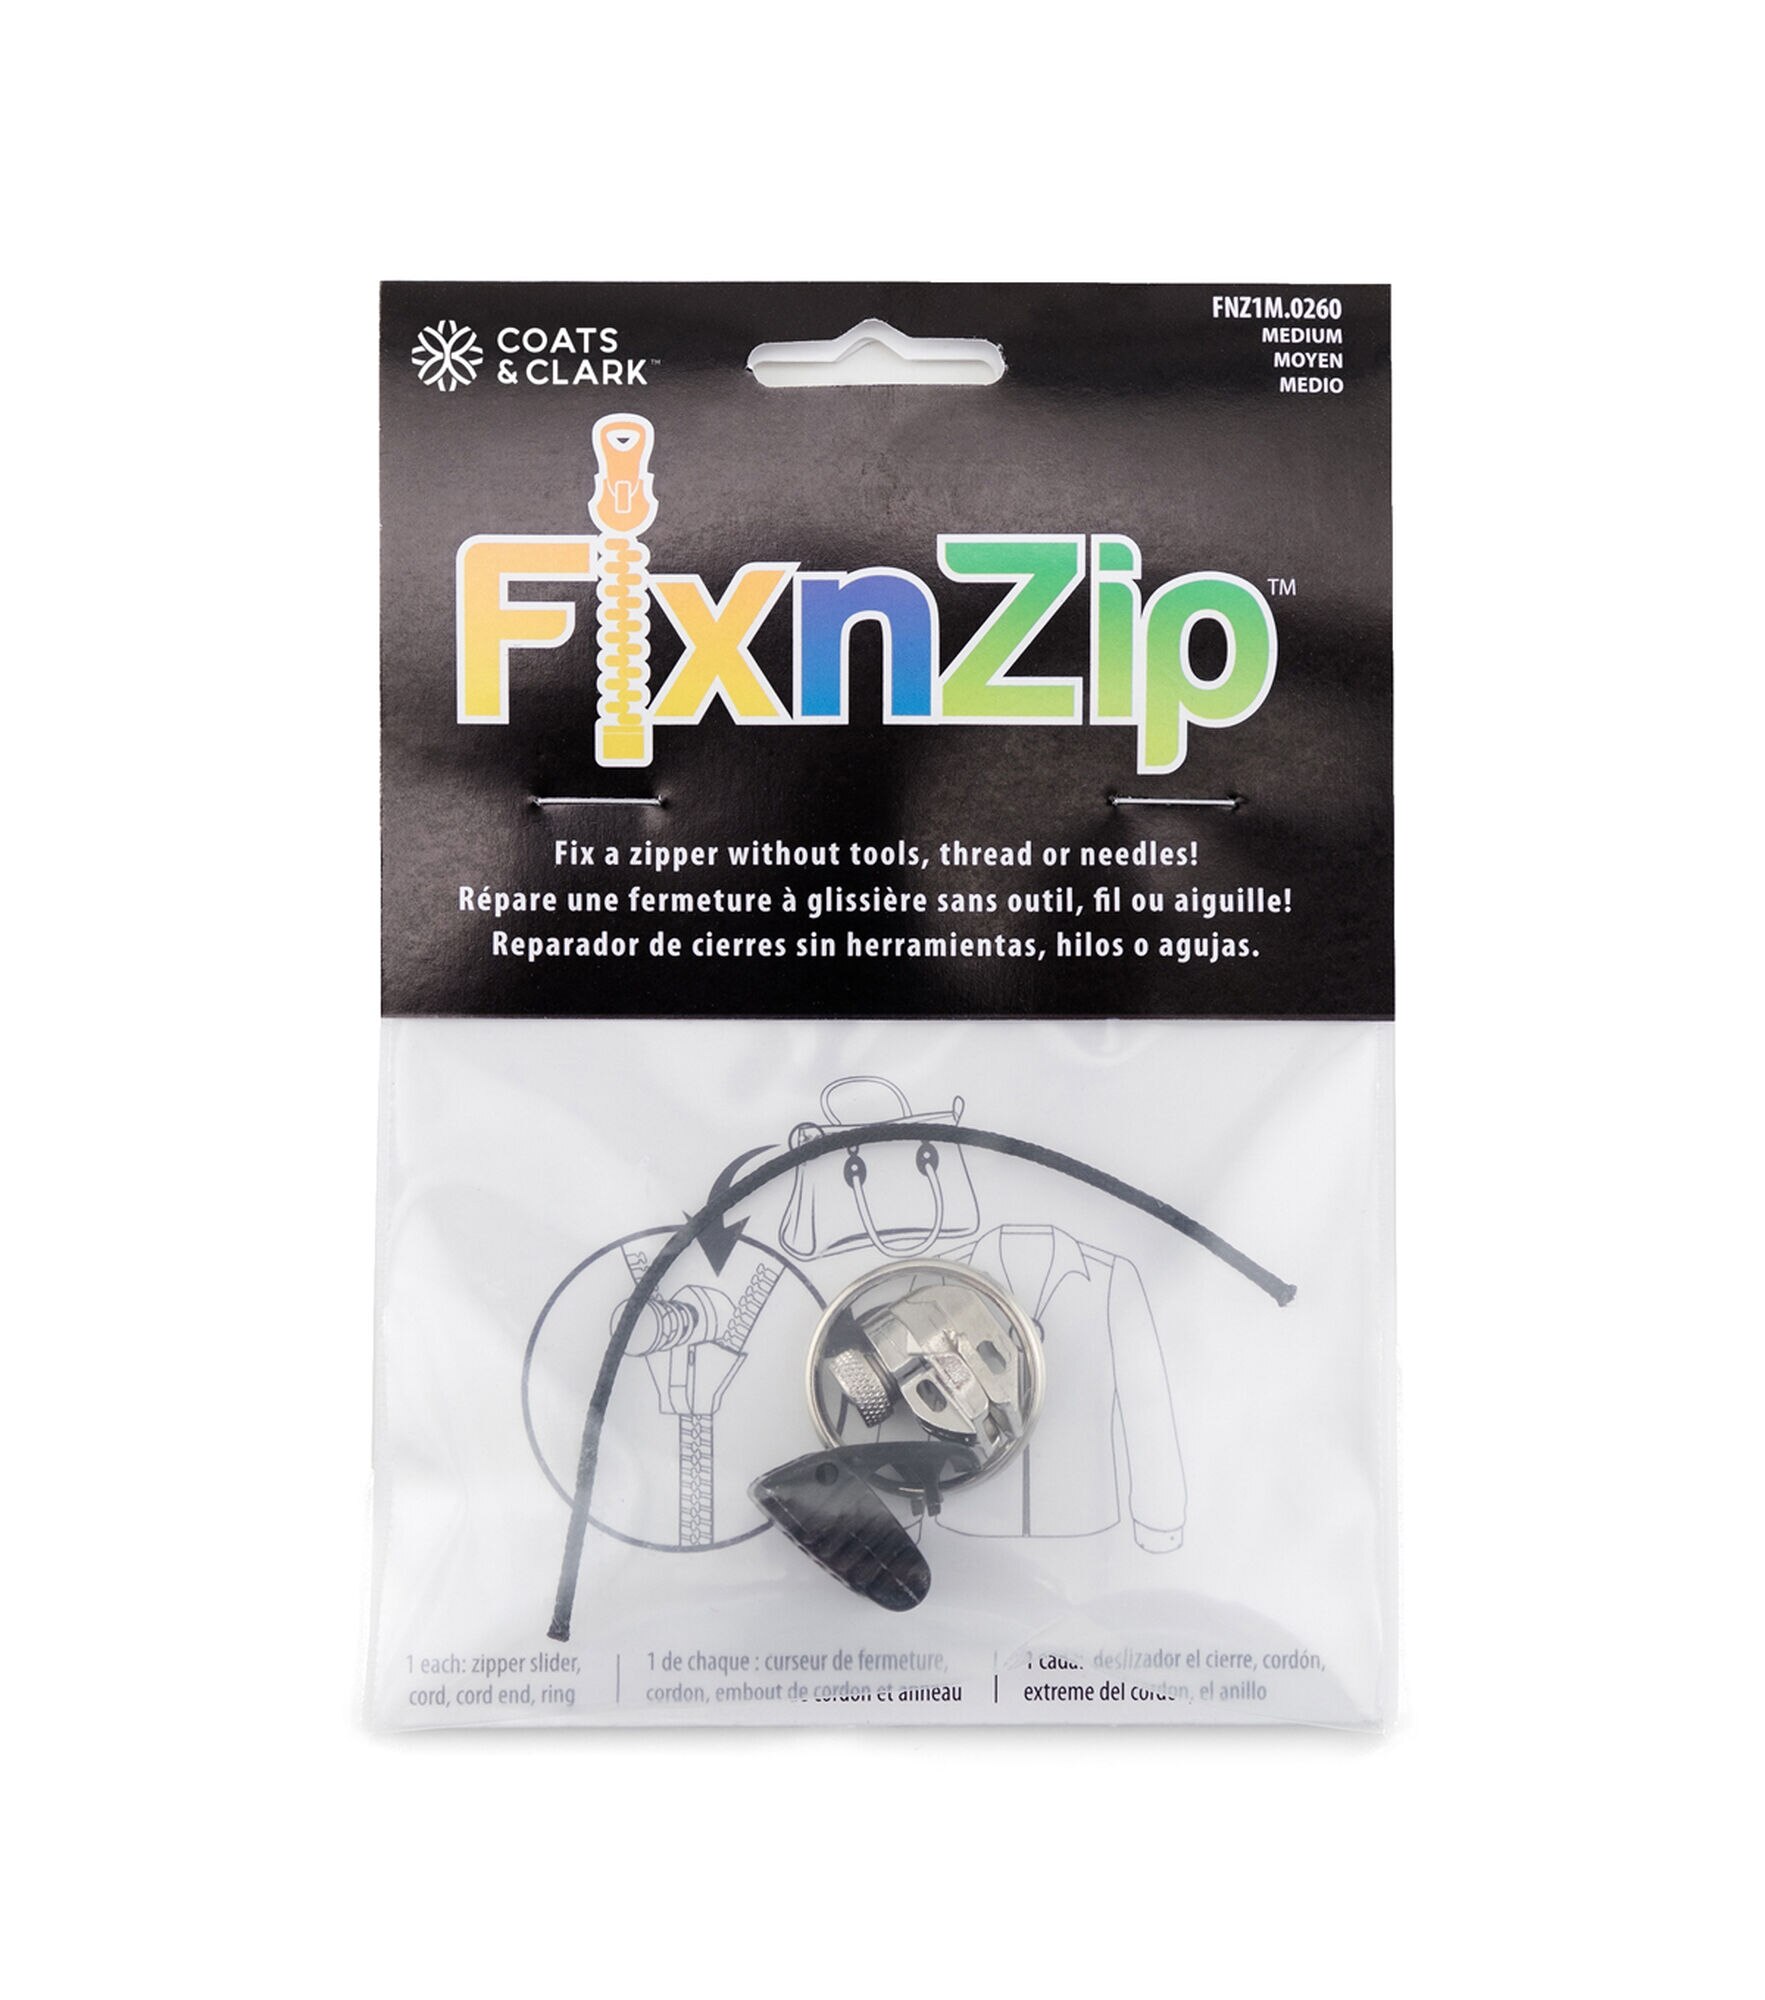 New! Fix n Zip Zipper Repair Kit